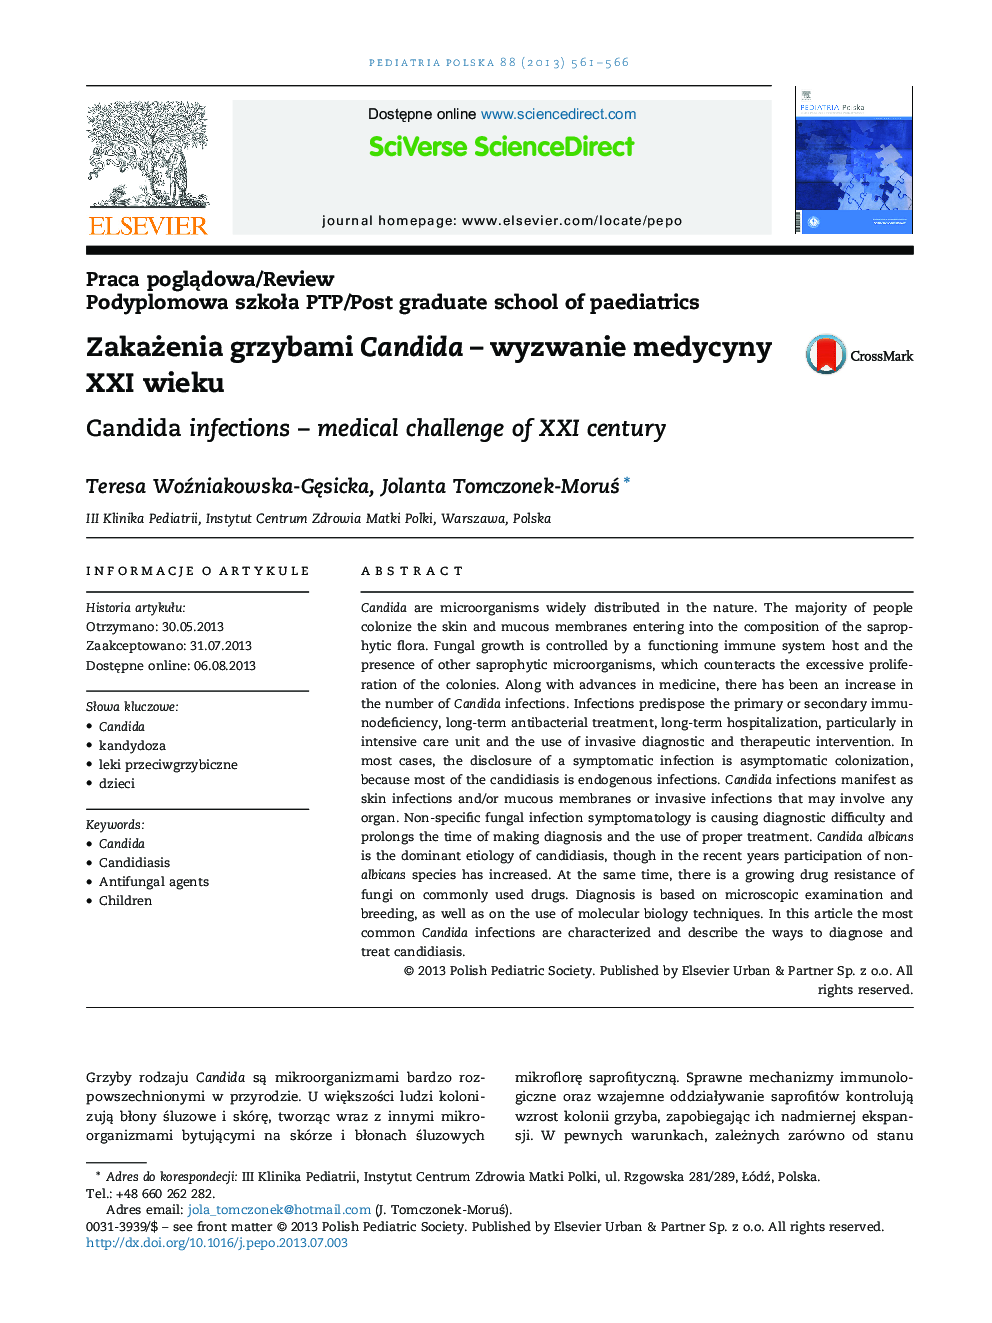 ZakaÅ¼enia grzybami Candida - wyzwanie medycyny XXI wieku